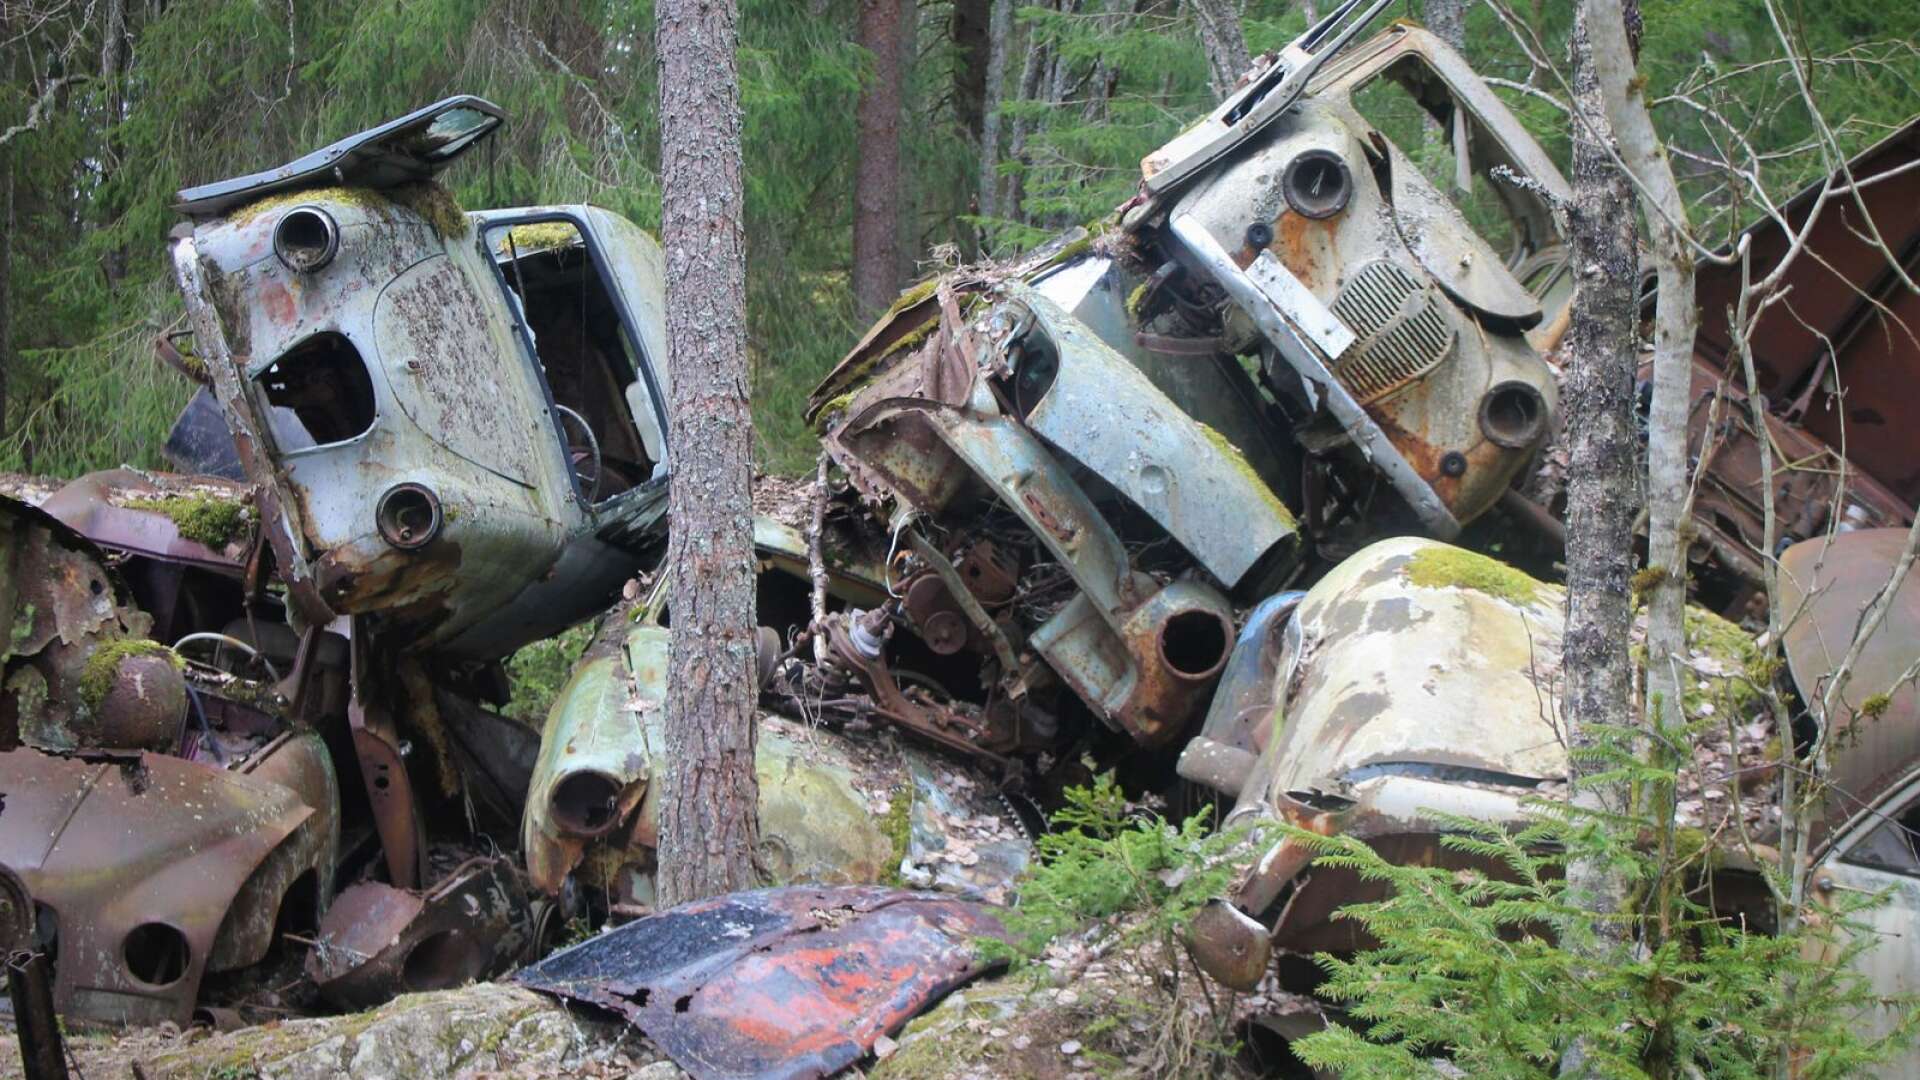 Tusentals bilar som är &quot;döda&quot;, men får en känsla av liv när naturen tagit dem som sina. Man kan lätt se något trollaktigt över skrotbilarna i den John Bauerska skogen.